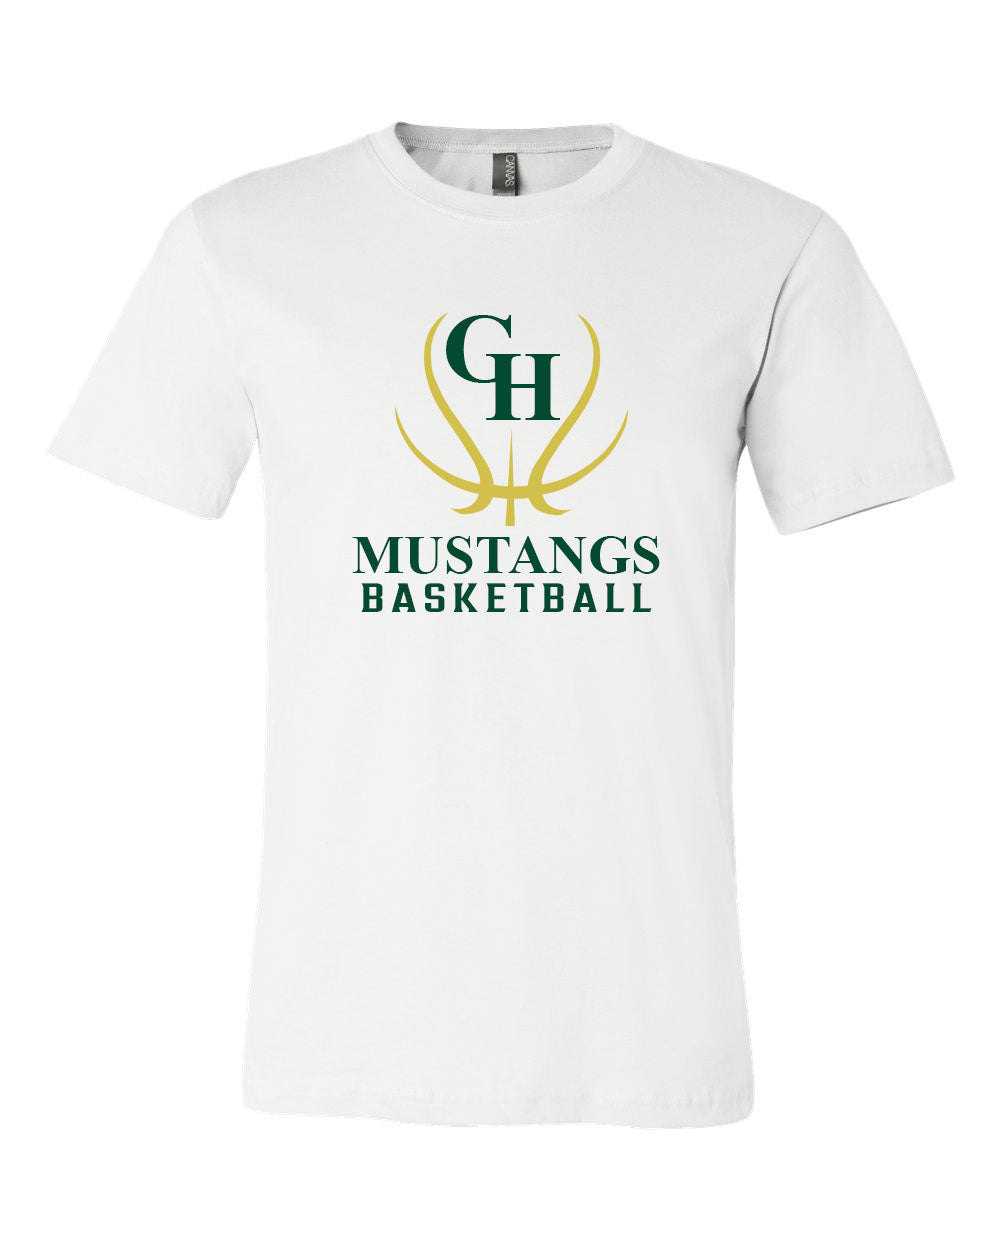 Green Hills Basketball Design 7 T-Shirt